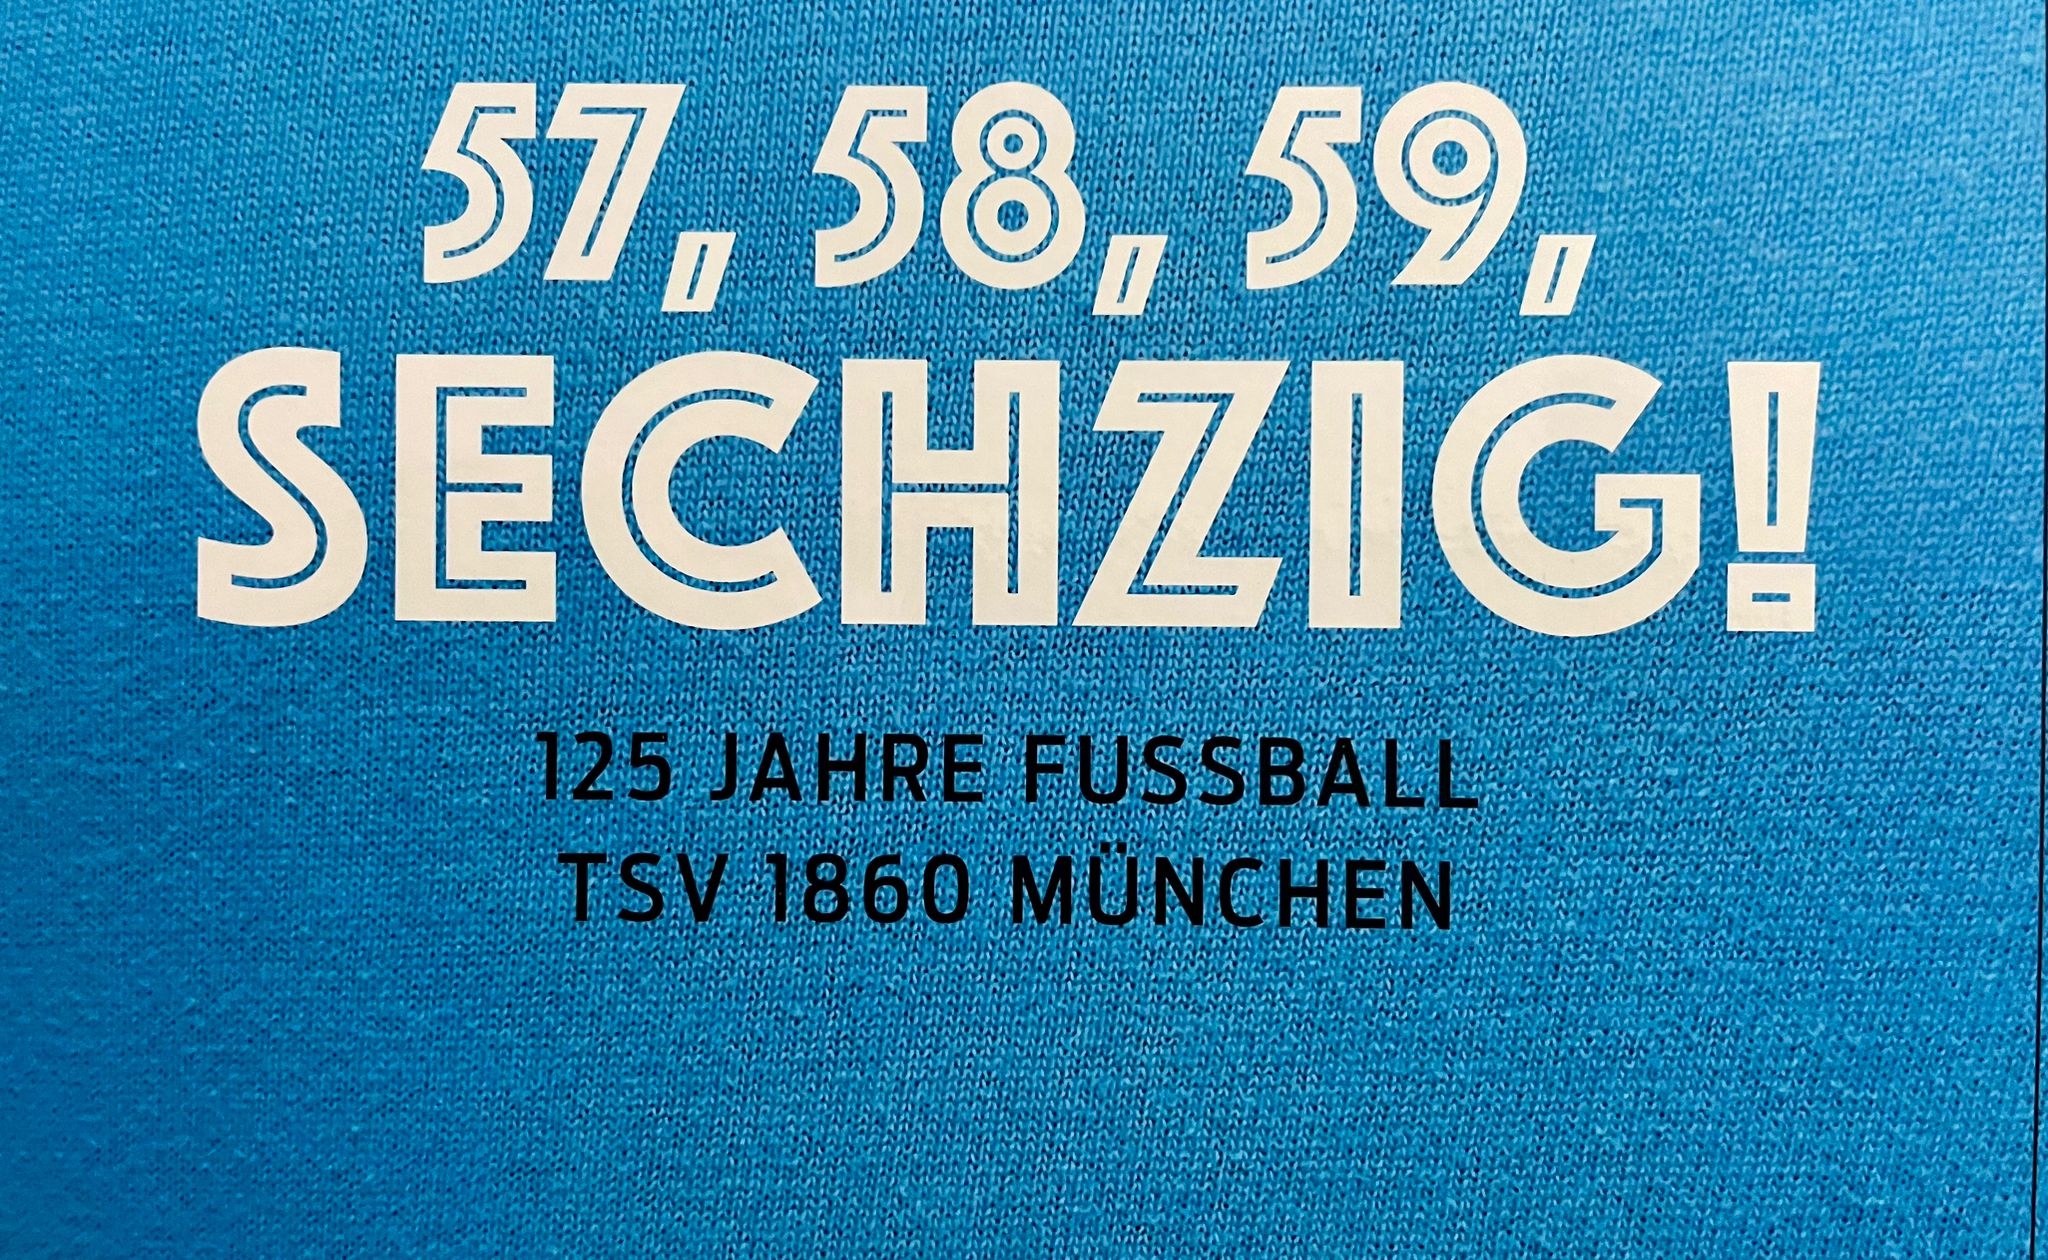 57, 58, 59, Sechzig! 125 Jahre Fußball TSV 1860 München [Empfehlung]